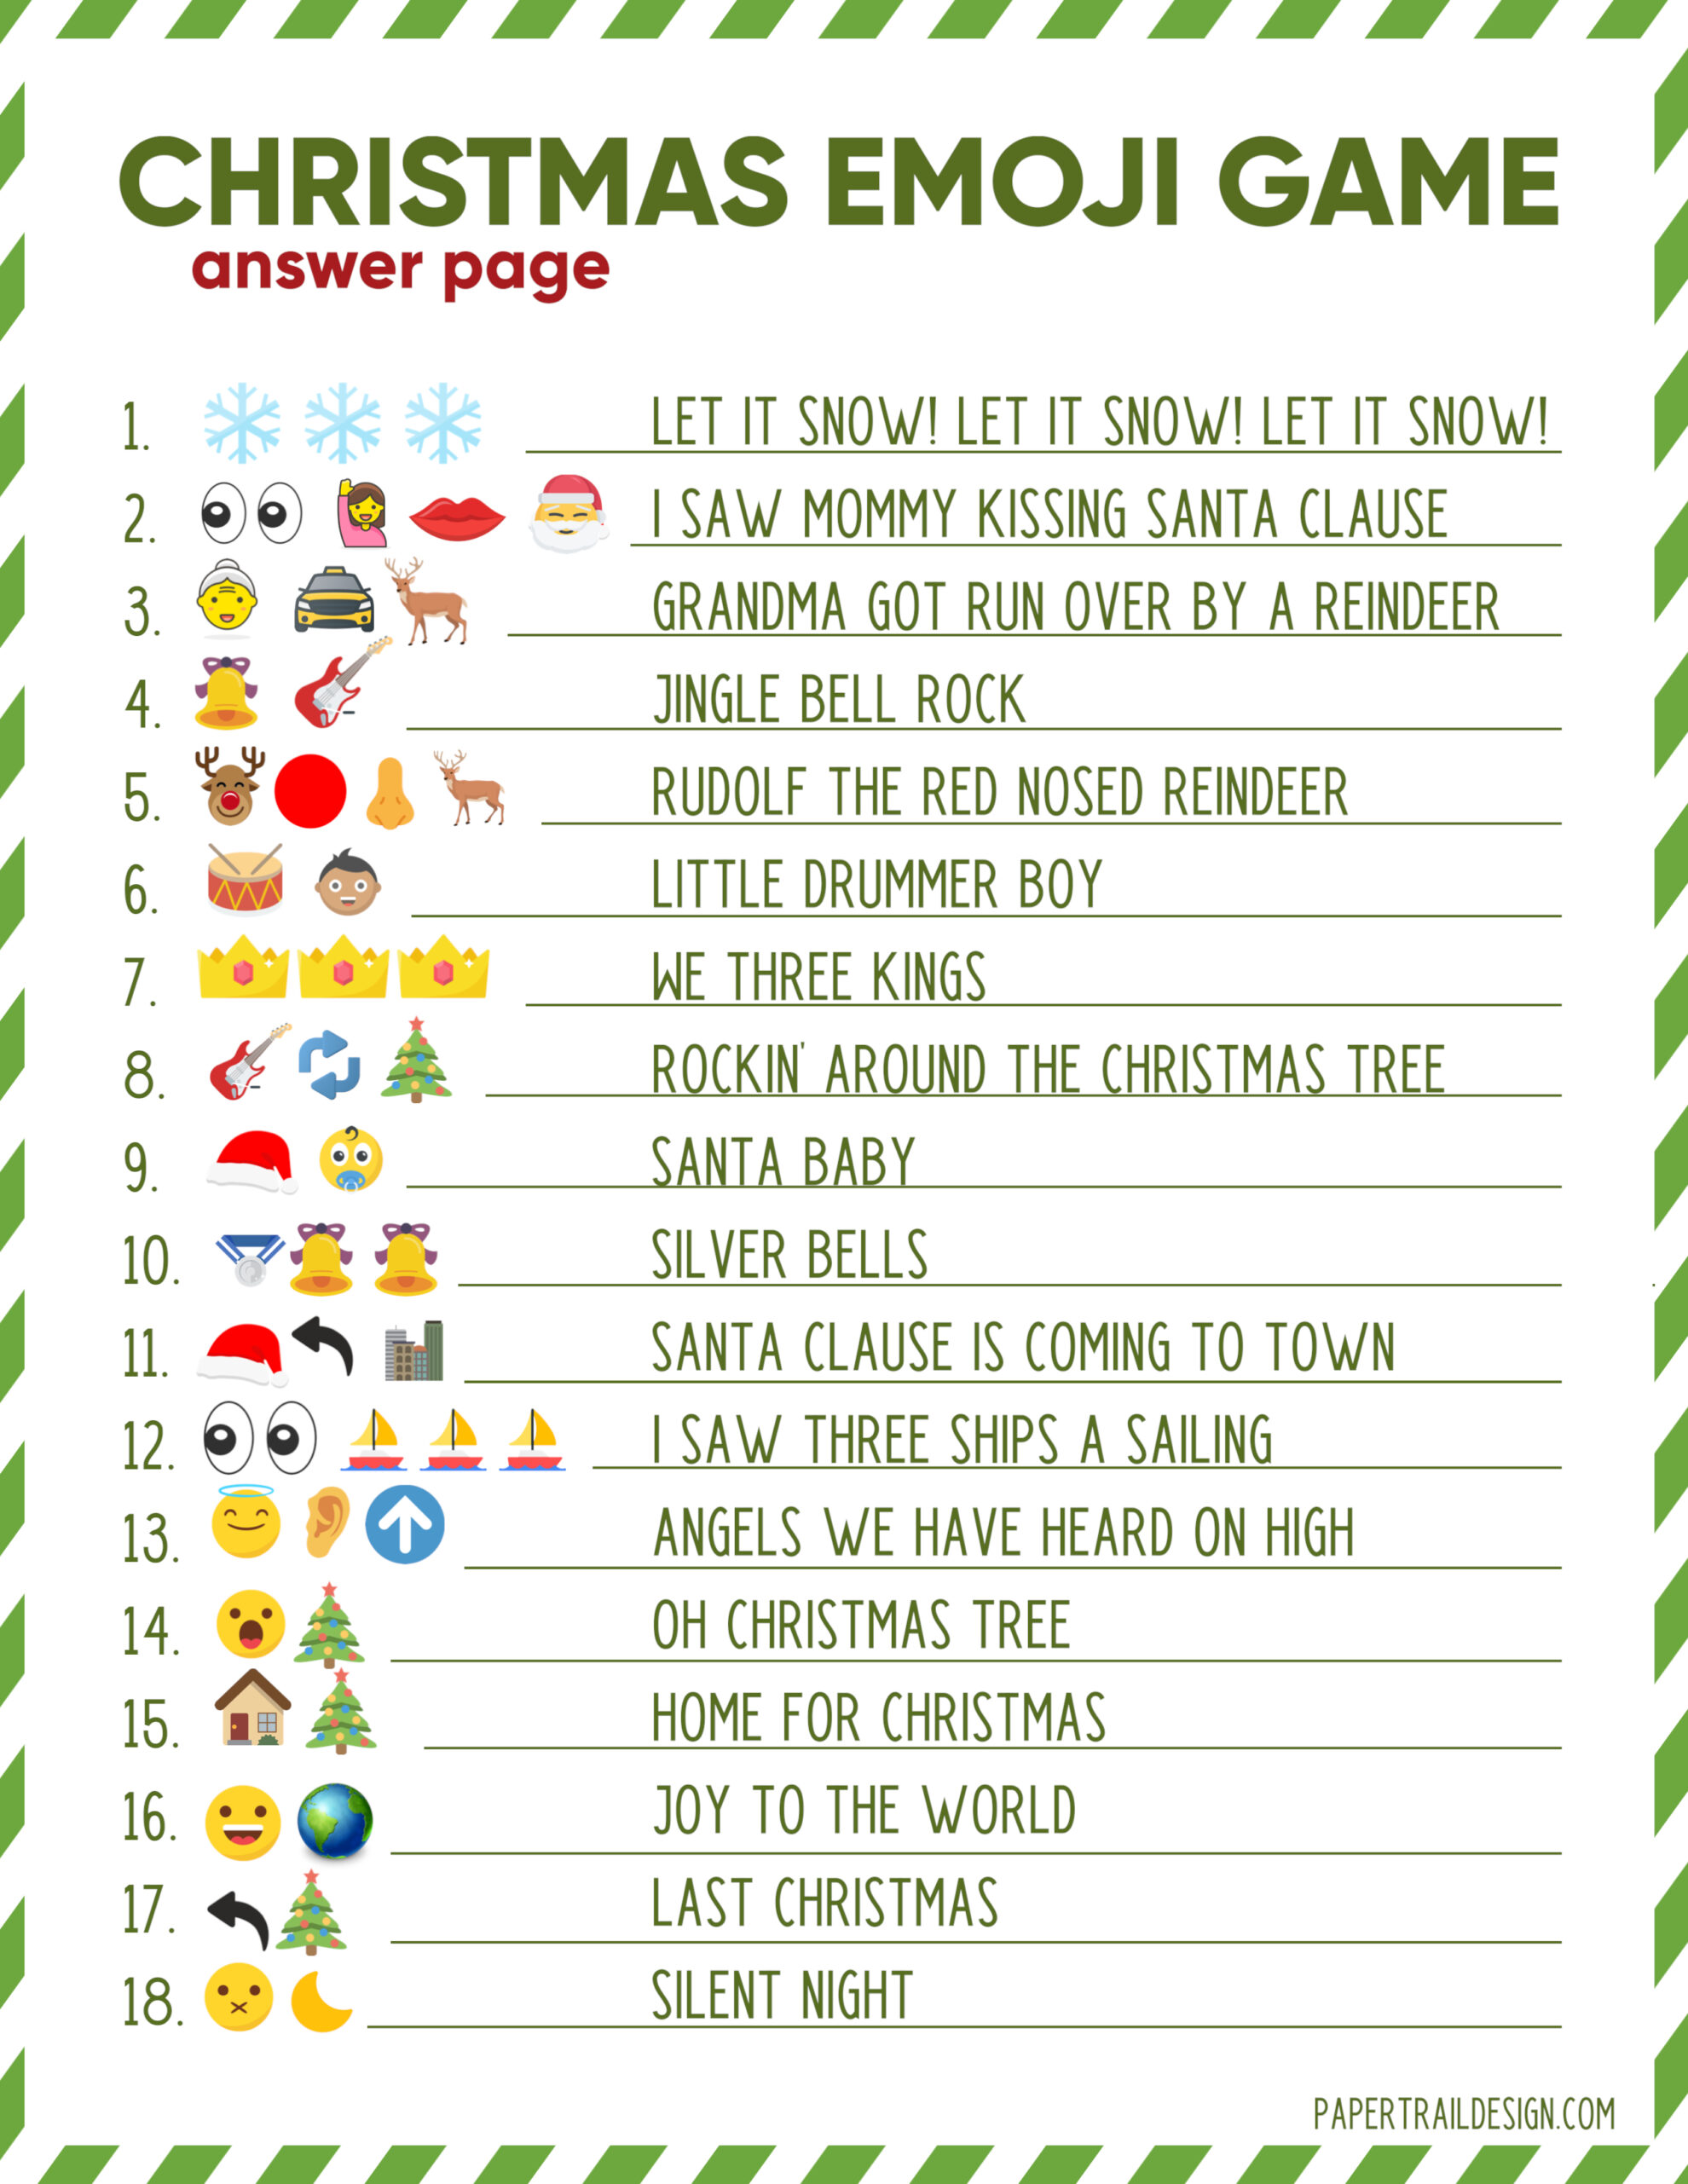 christmas-emoji-game-free-printable-free-printable-templates